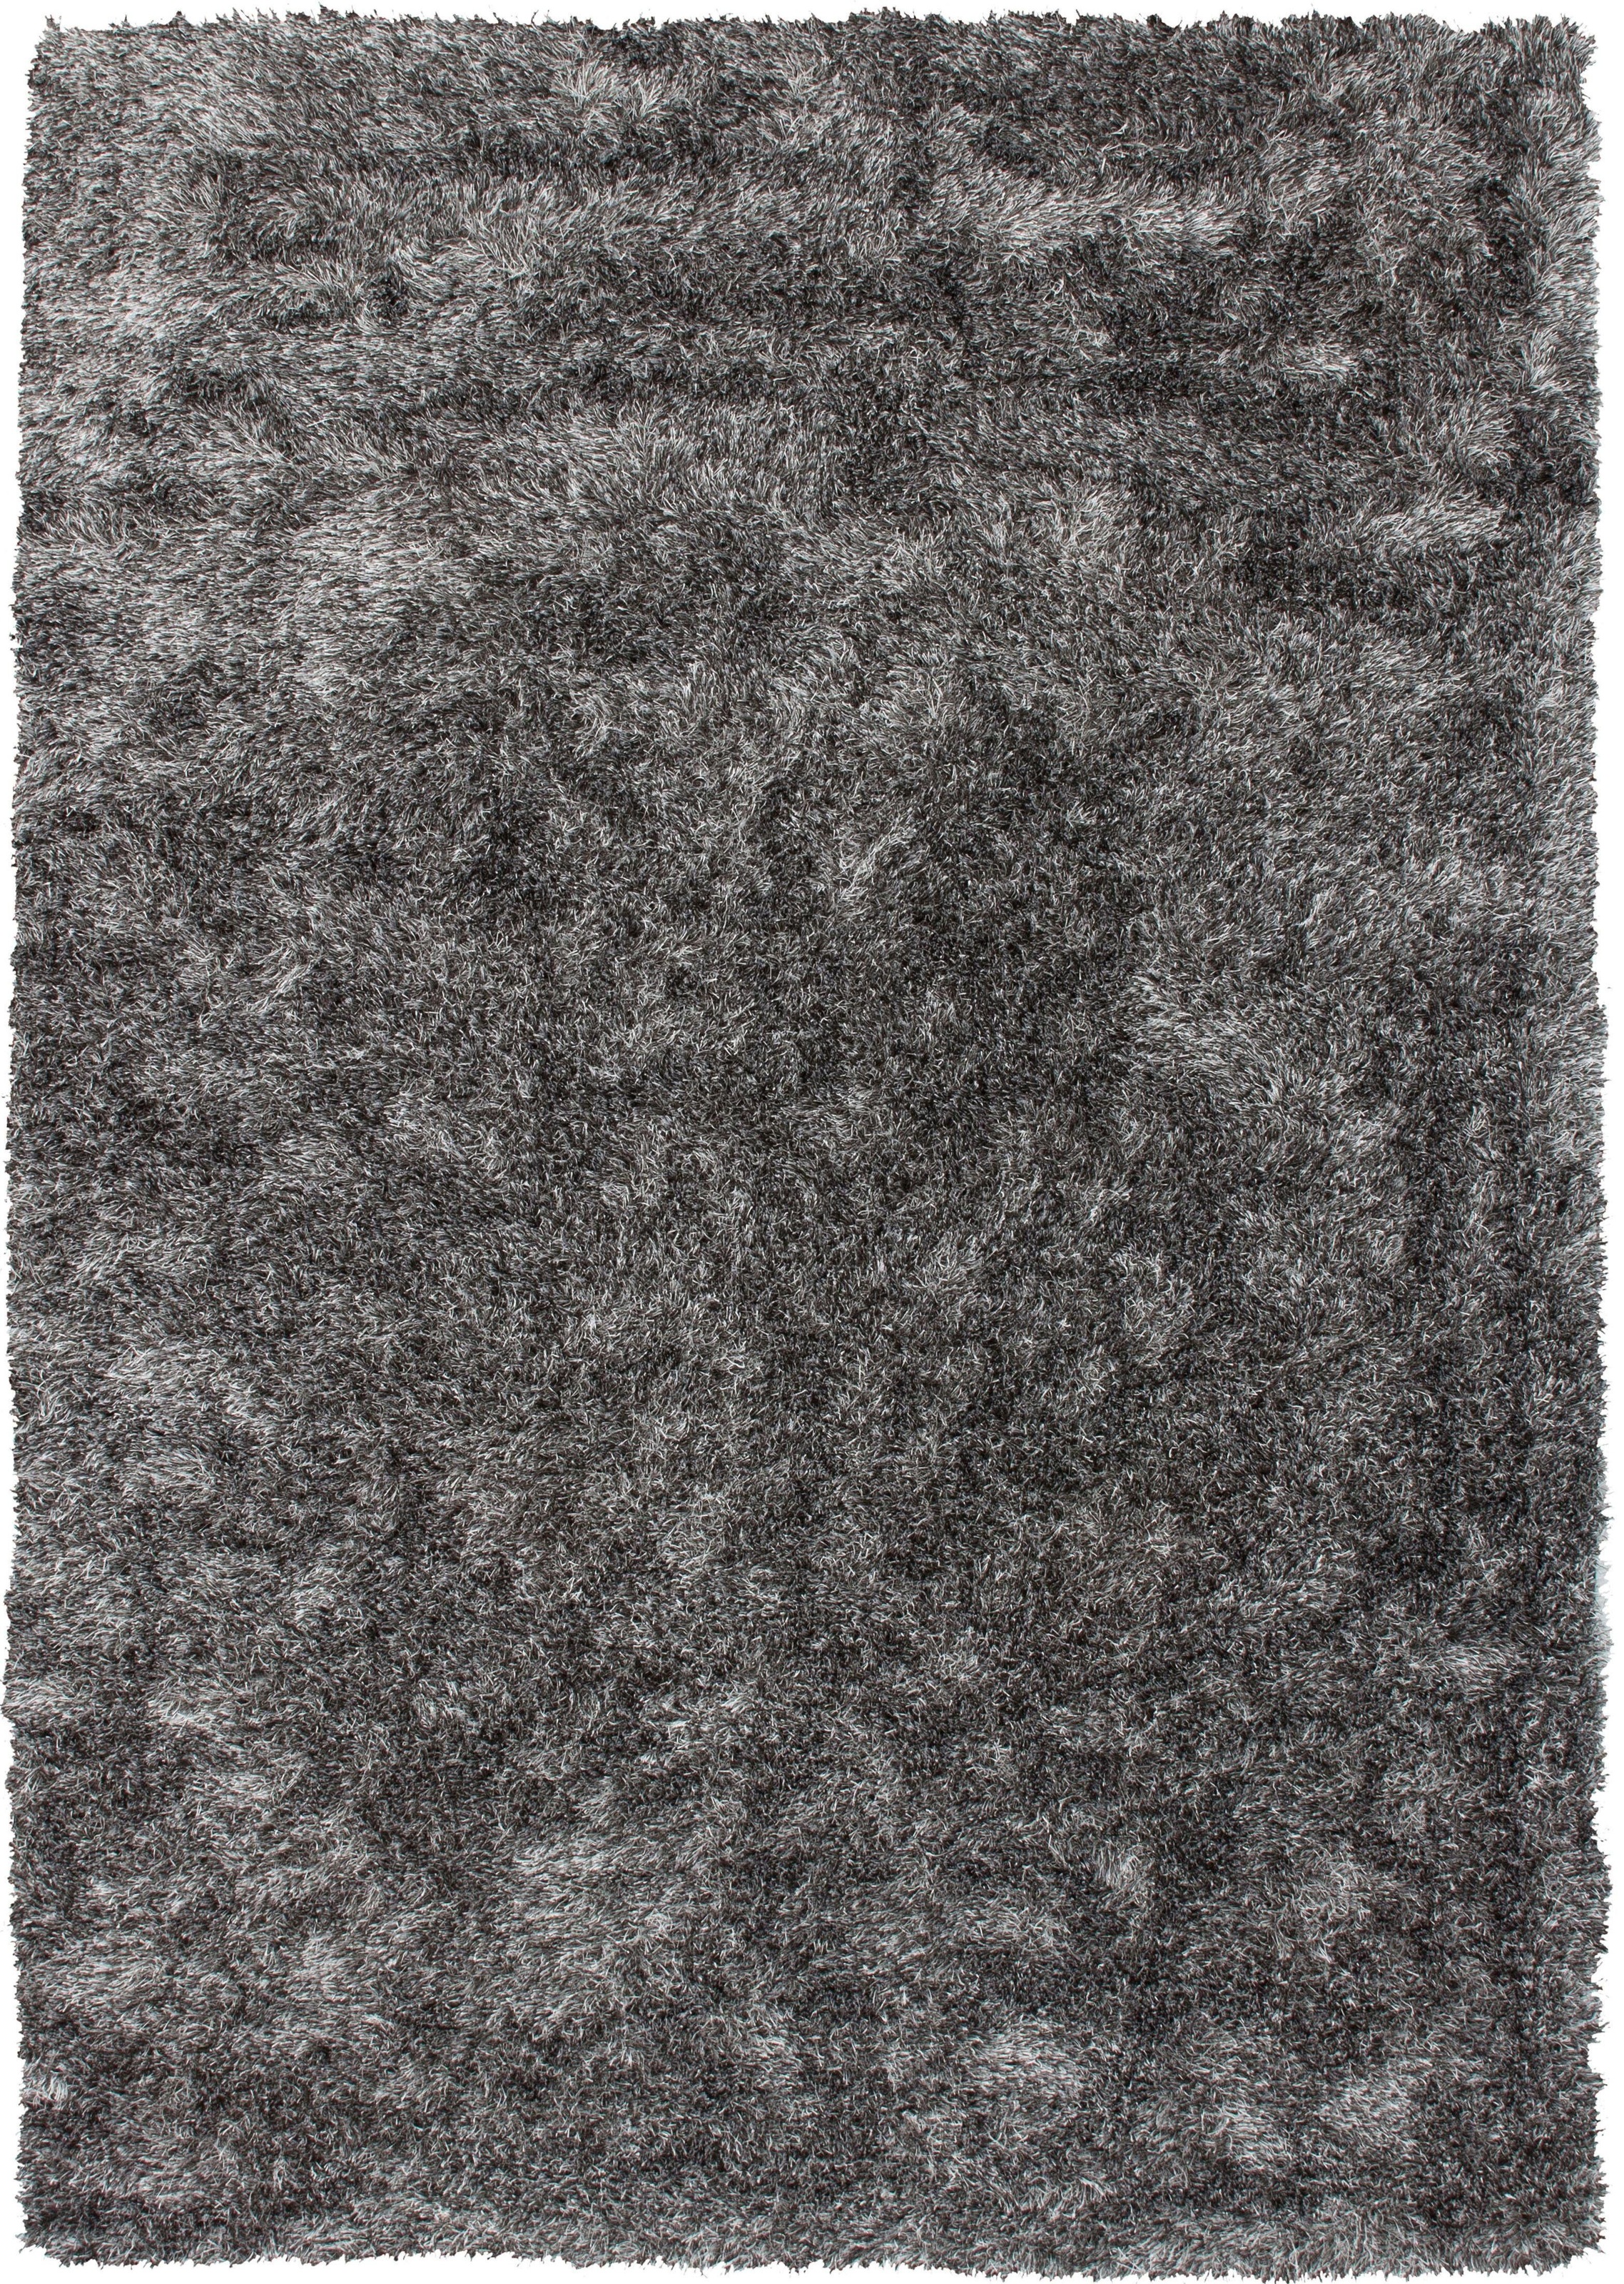 Bruno Banani Hochflor-Teppich »Alga«, rechteckig, Uni-Farben, besonders weich und kuschelig